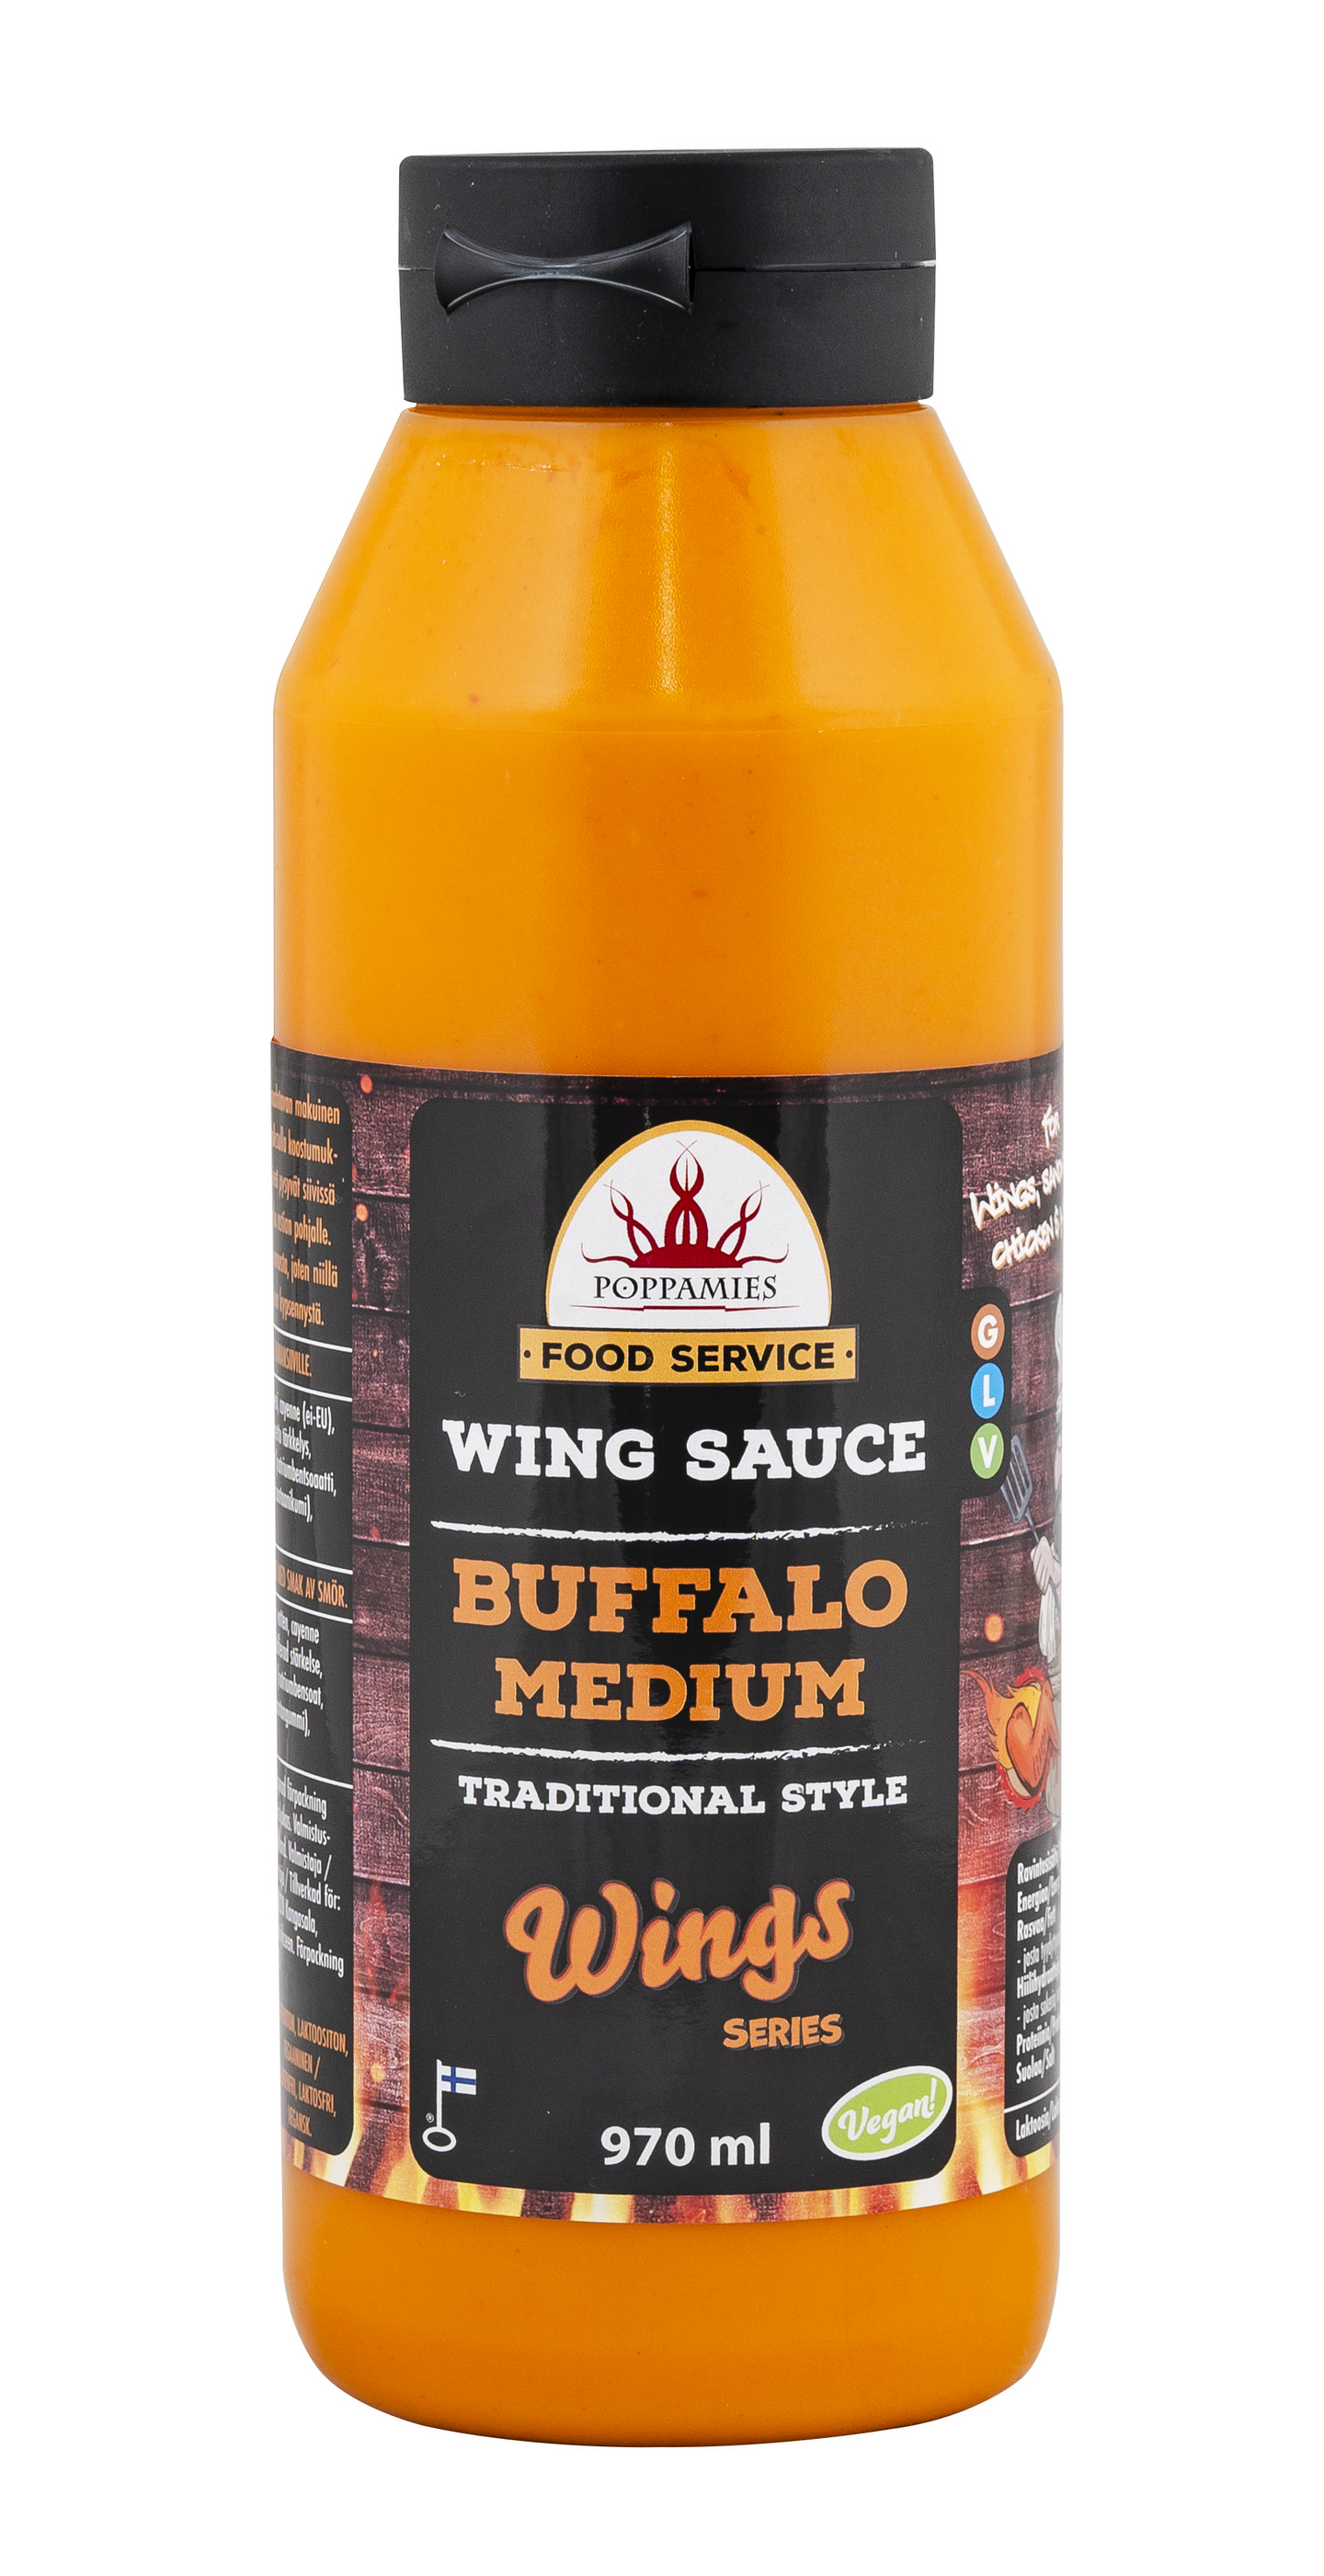 Poppamies Wing Sauce Buffalo Medium siipikastike 970ml